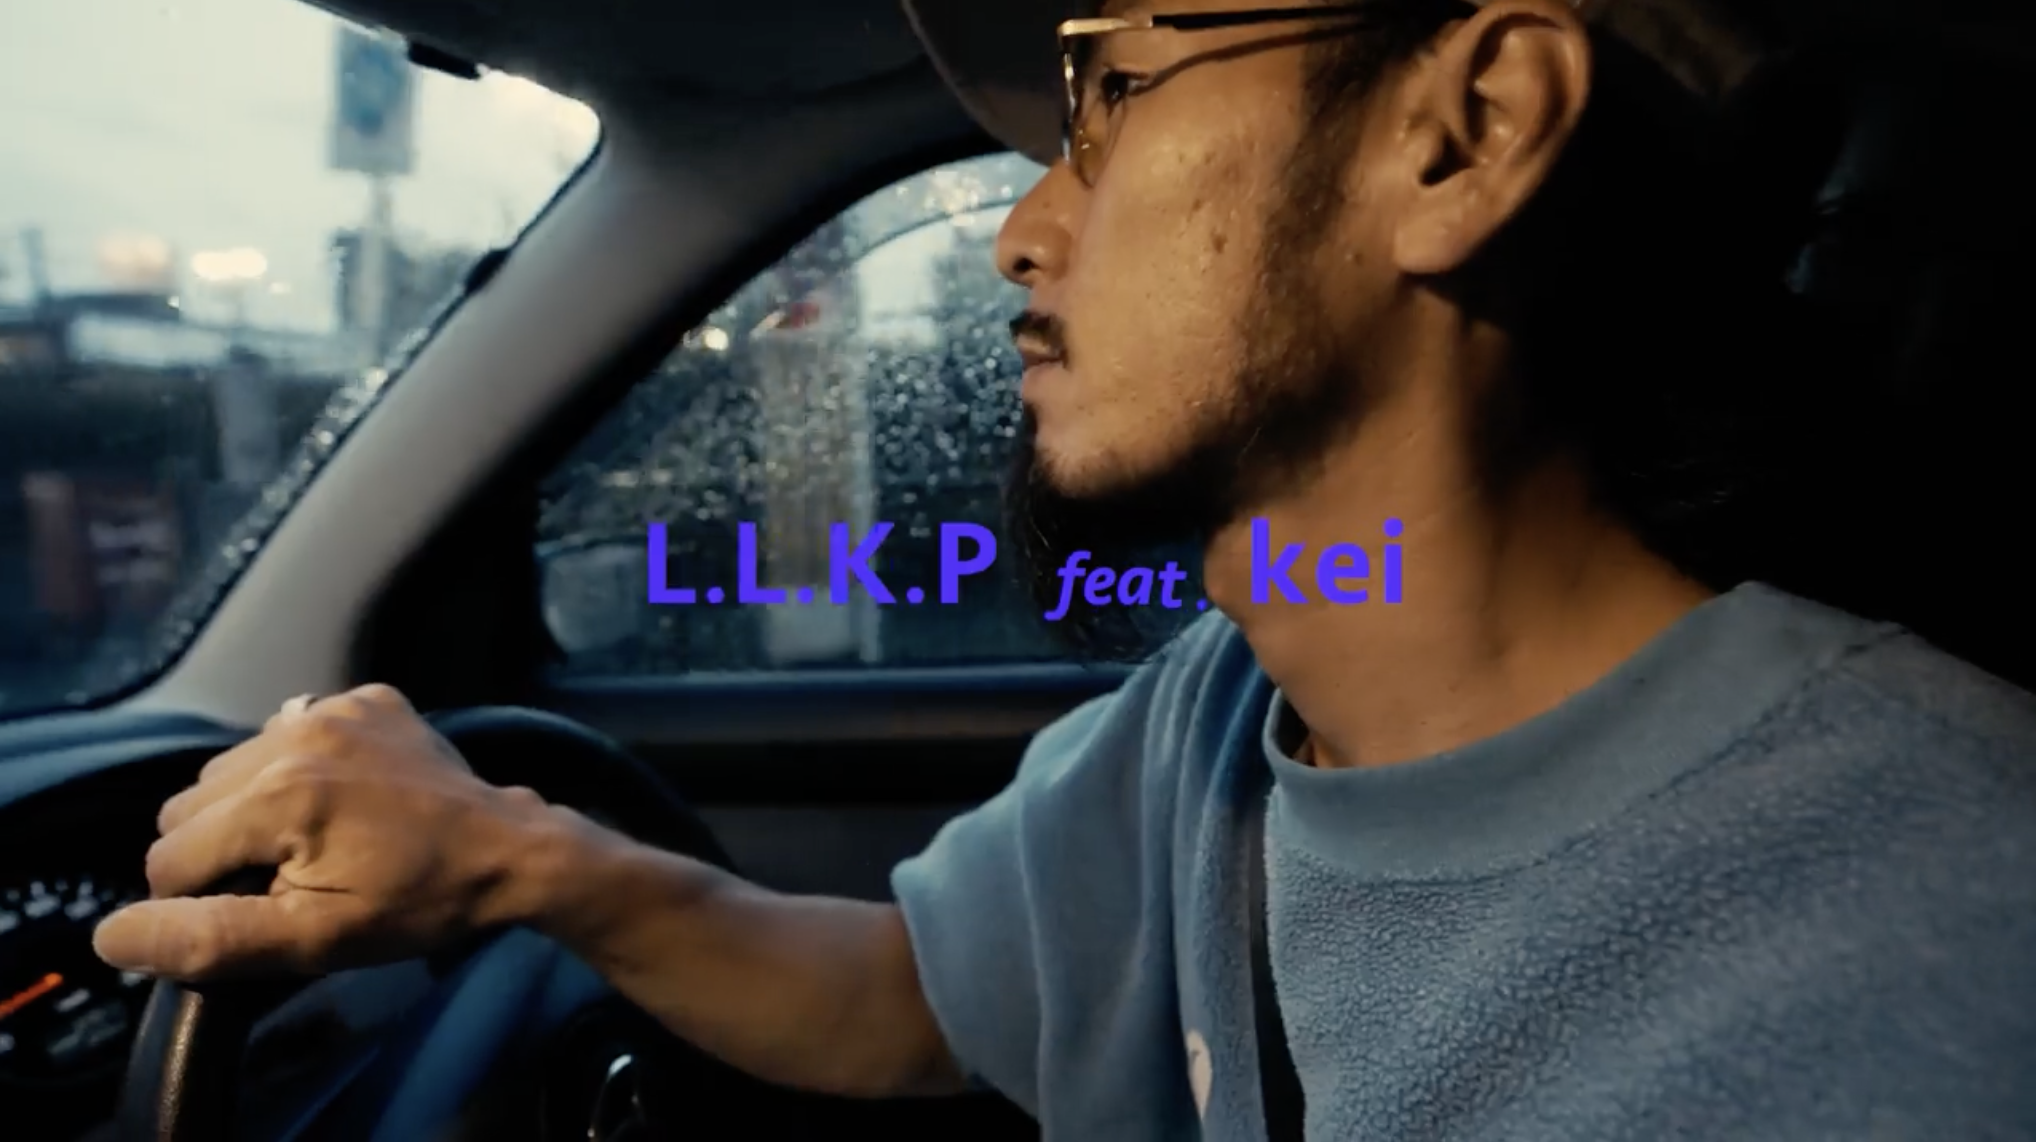 L.L.K.P feat. Kei “フライドオレオ”